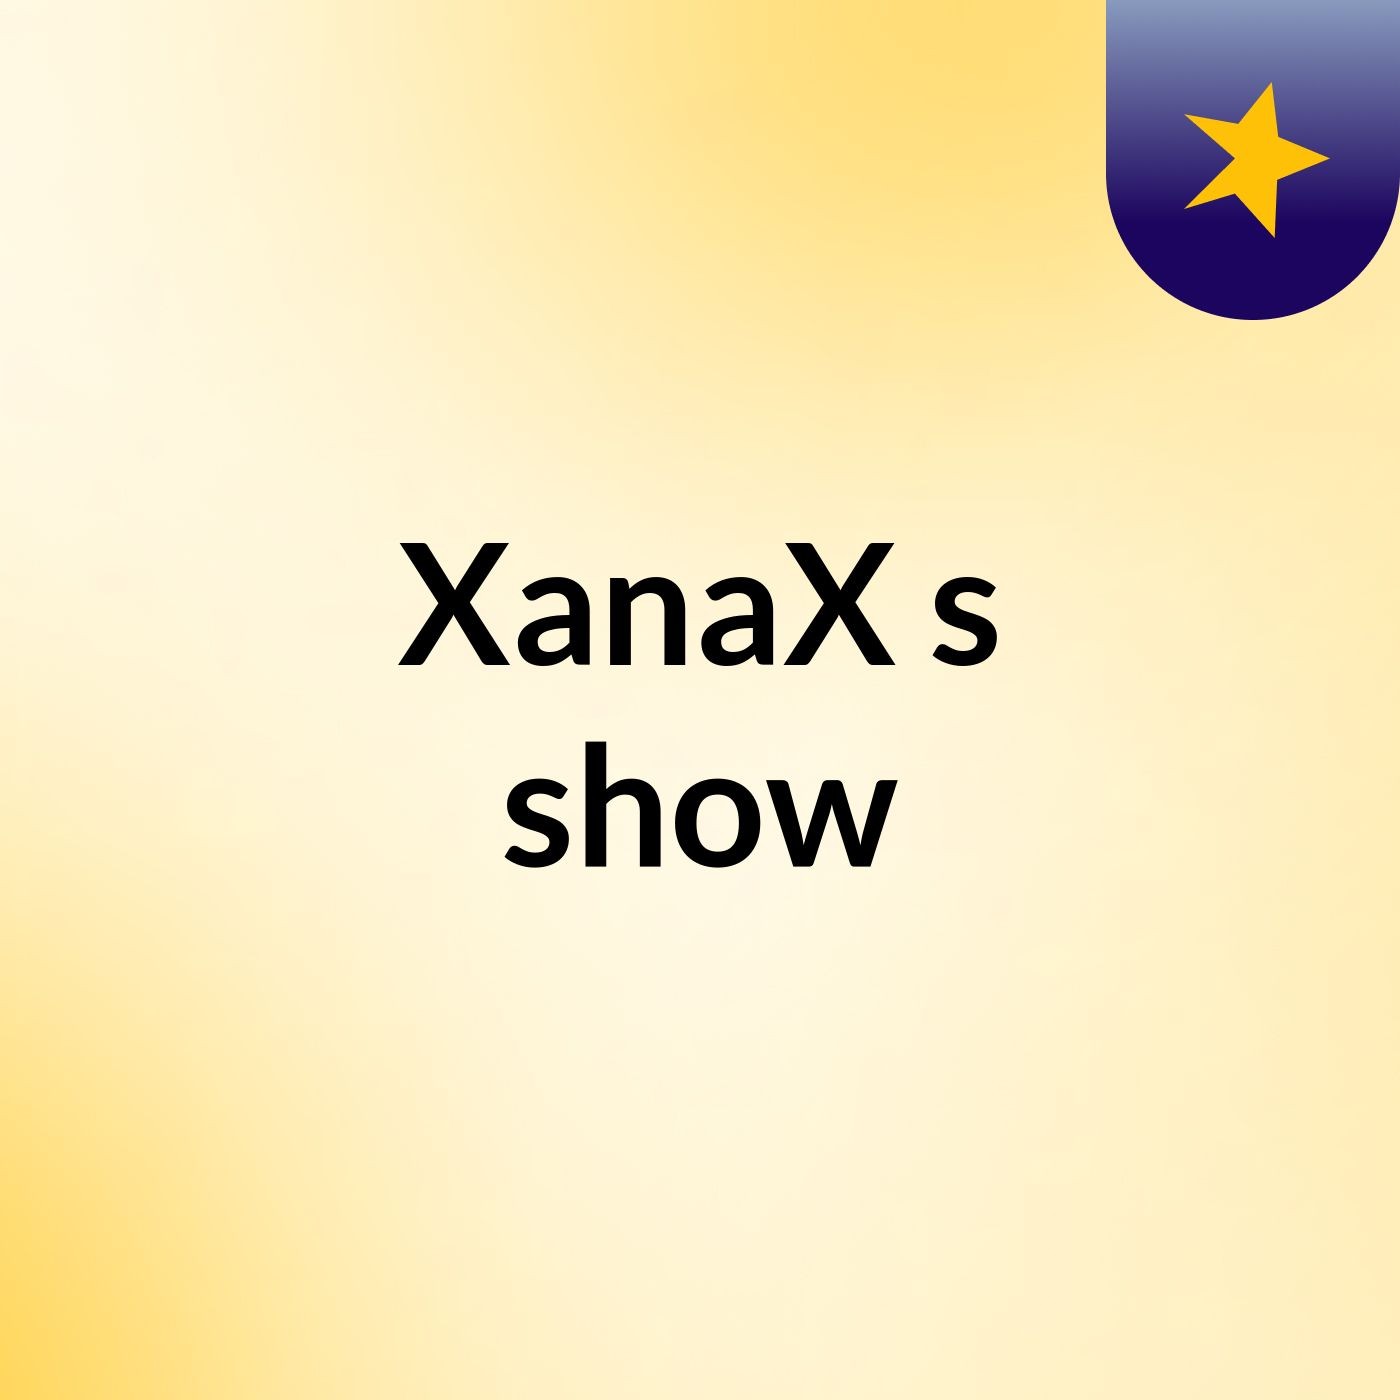 XanaX's show